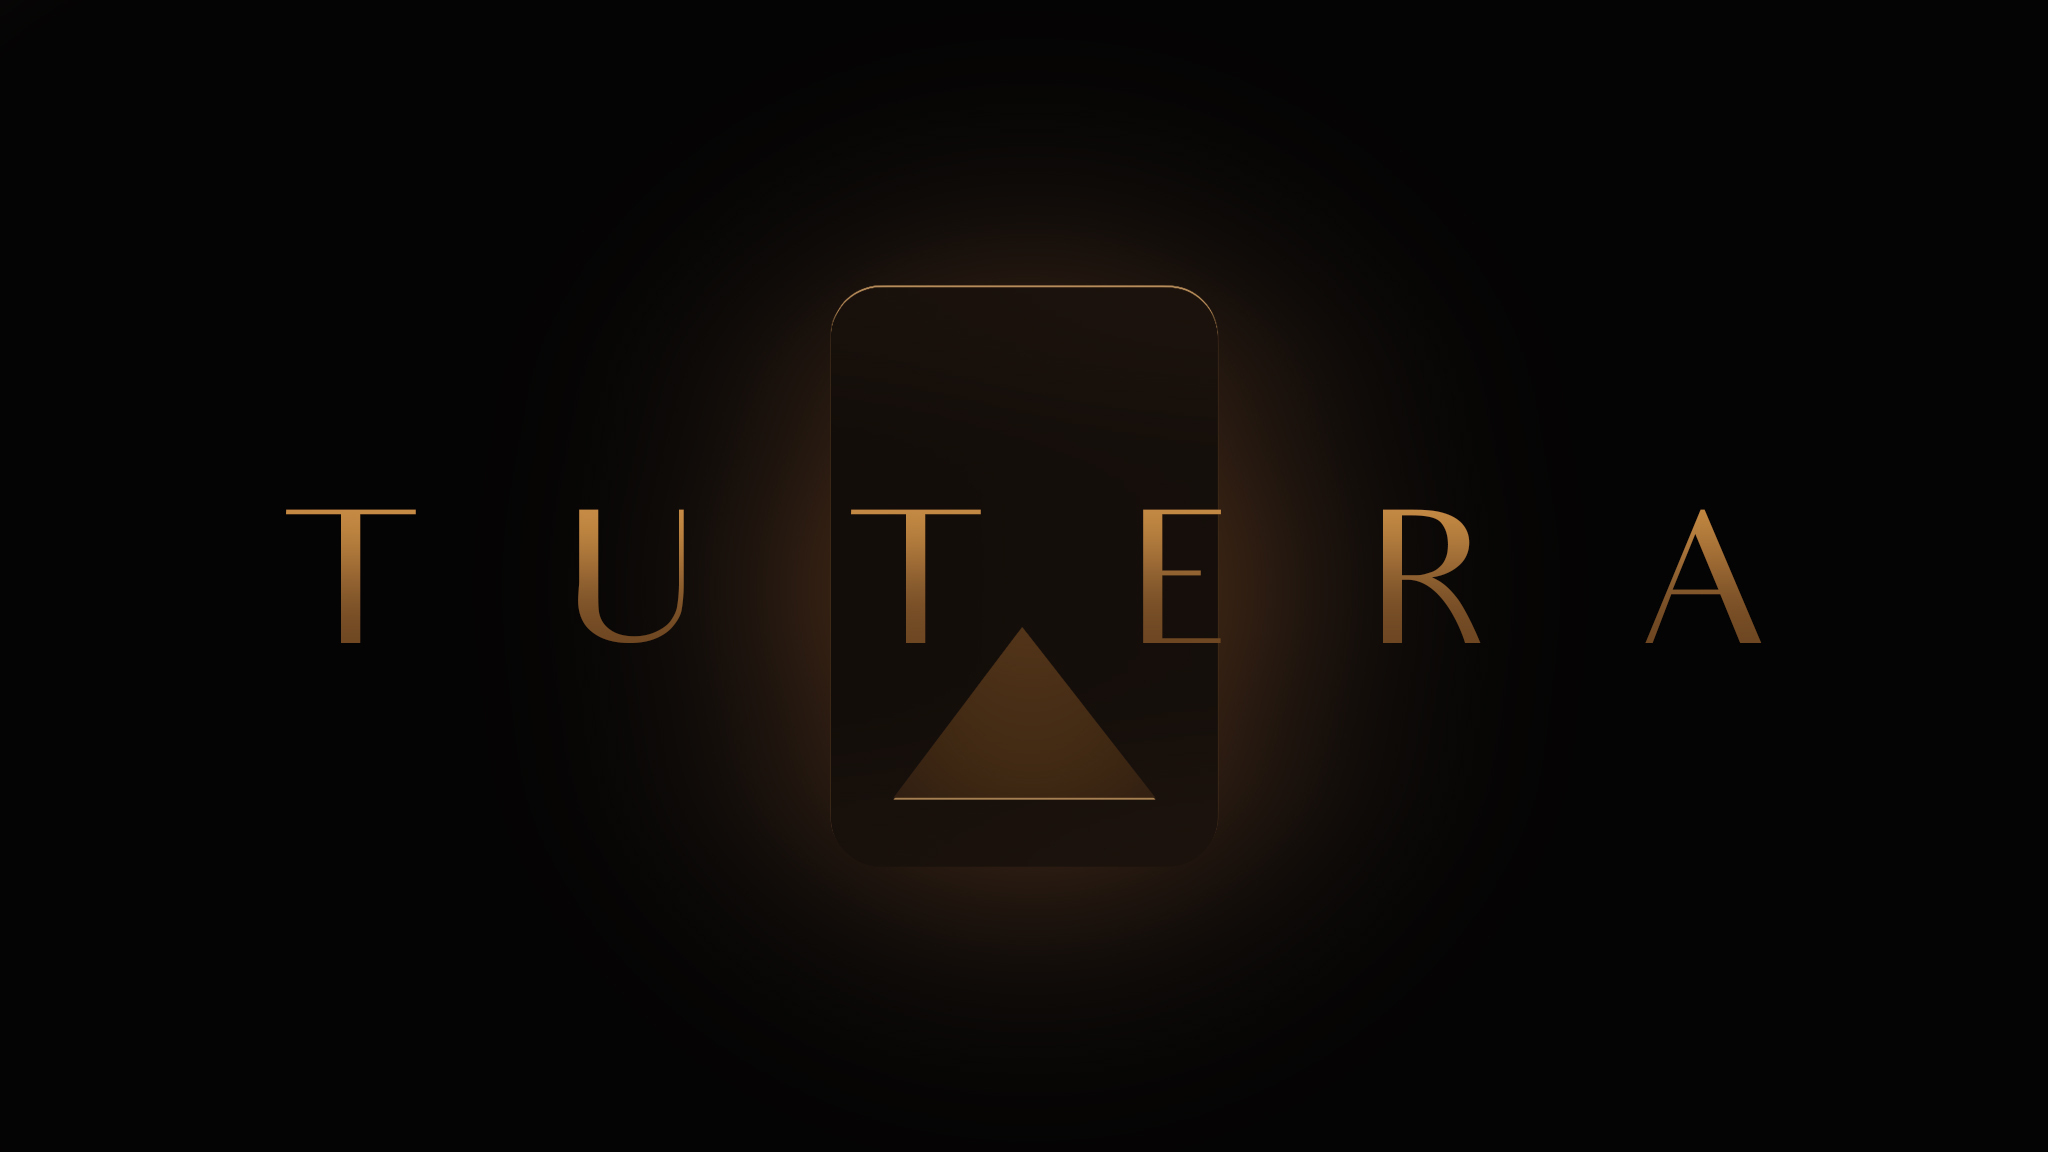 Tutera là thương hiệu uy tín về các giải pháp tự động hóa và điều khiển thiết bị điện. Với nhiều năm kinh nghiệm và tay nghề chuyên môn, chúng tôi cam kết mang đến sản phẩm và dịch vụ chất lượng cao nhất. Hãy xem hình ảnh để khám phá những sản phẩm của Tutera.